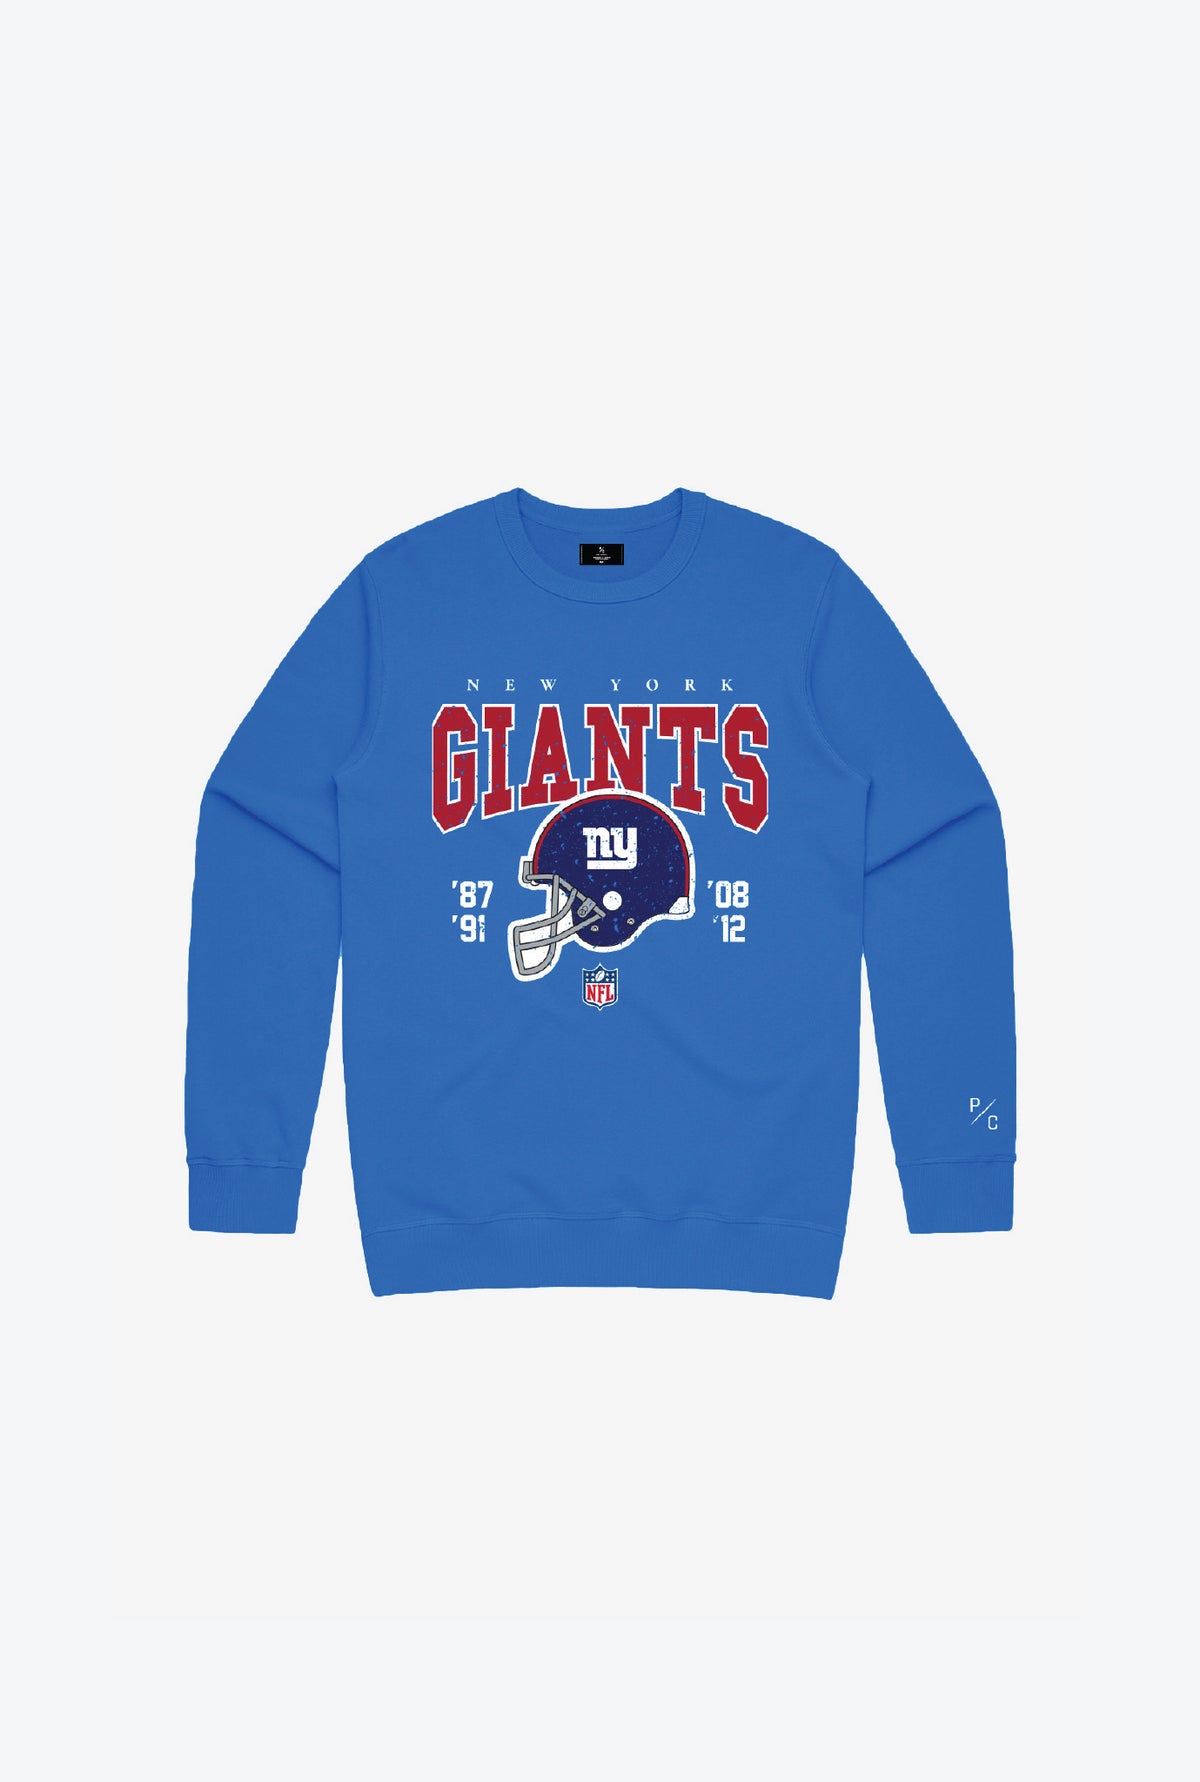 New York Giants Vintage Kids Crewneck - Royal